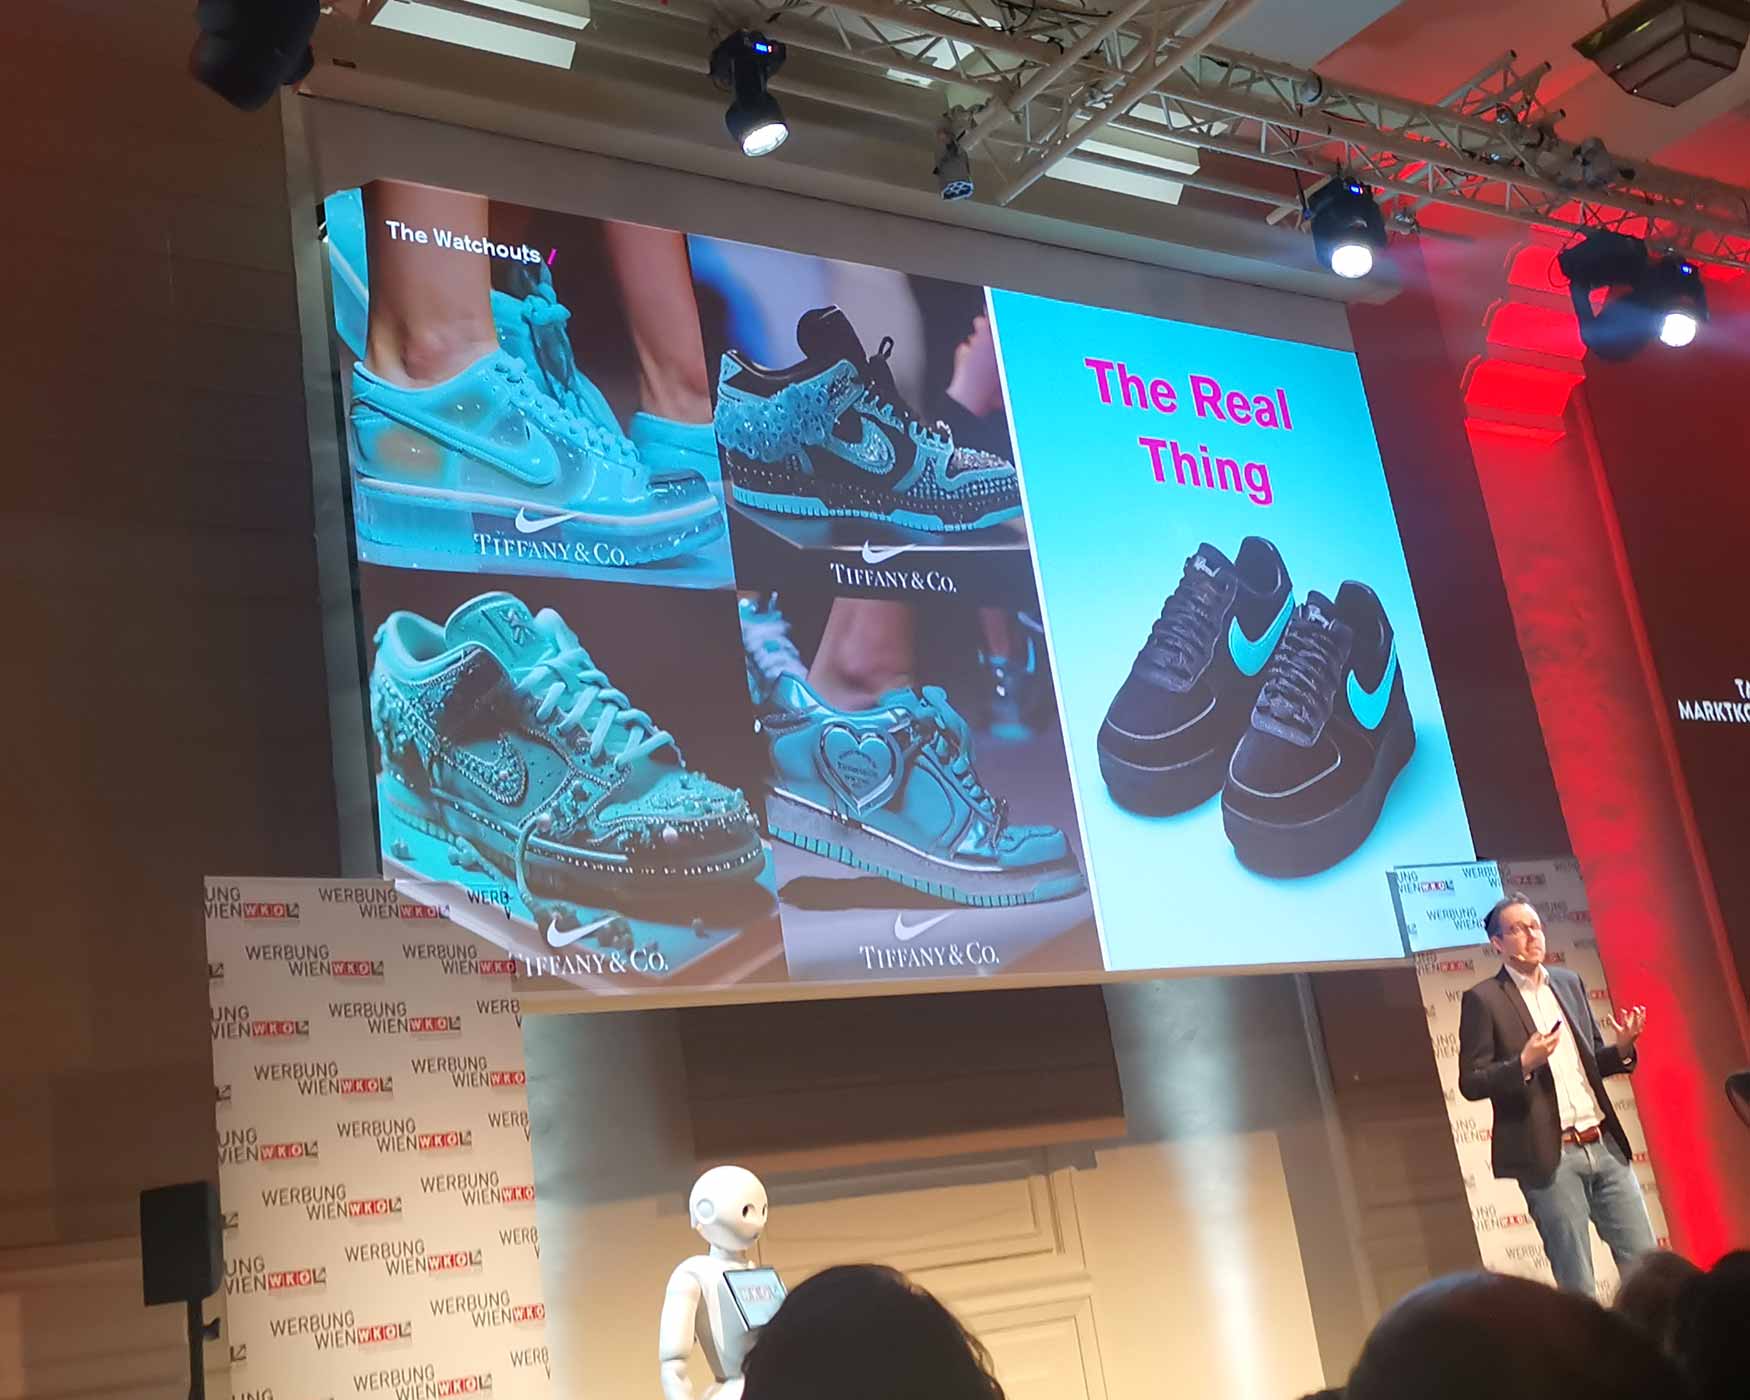 Nike generó gran entusiasmo en línea al anunciar su colaboración con Tiffany, lo que llevó a la creación de imágenes generadas por fanáticos mediante IA. Foto: CulturaLatina